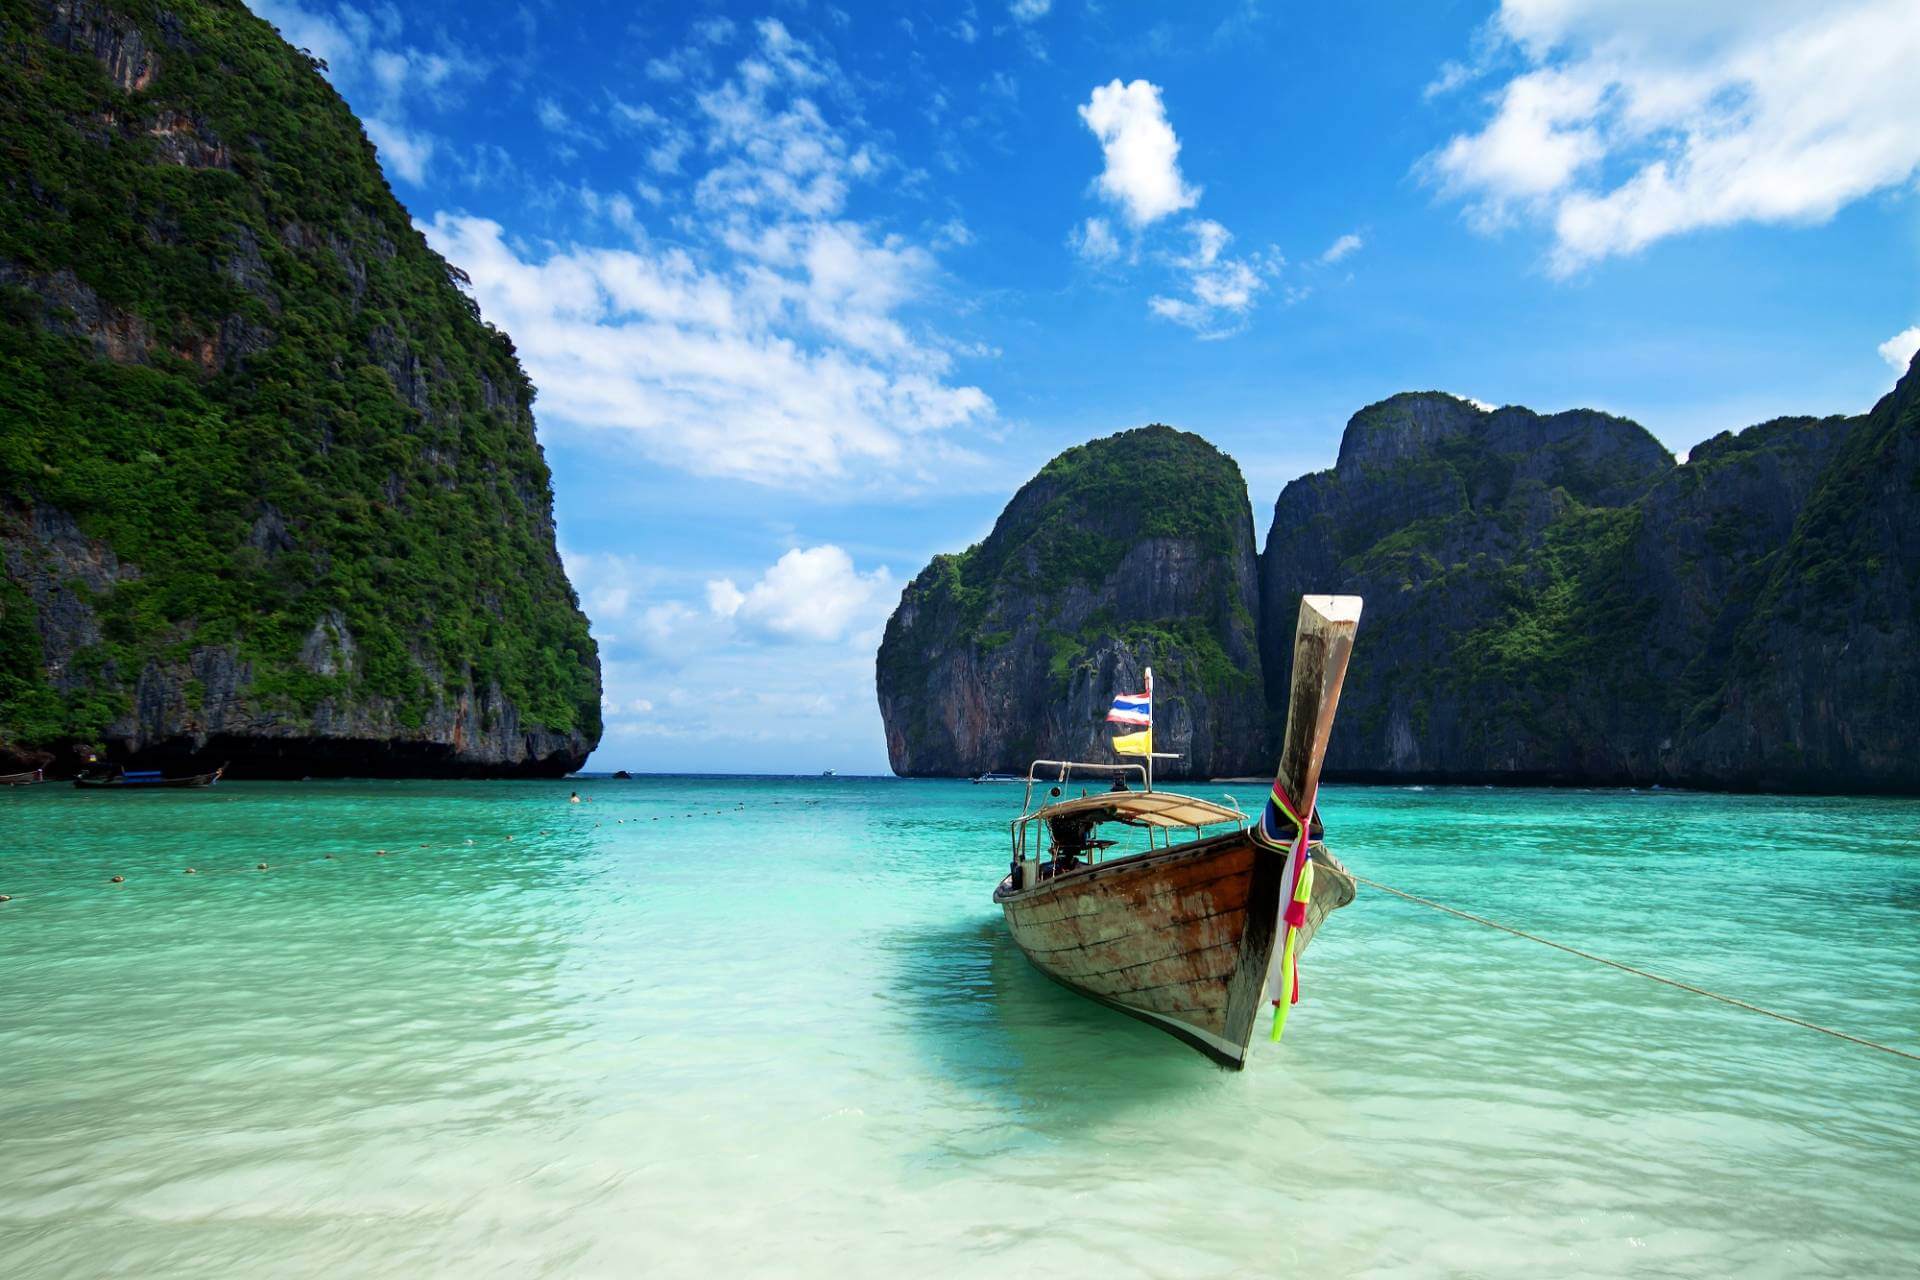 Thailand's largest island is Phuket